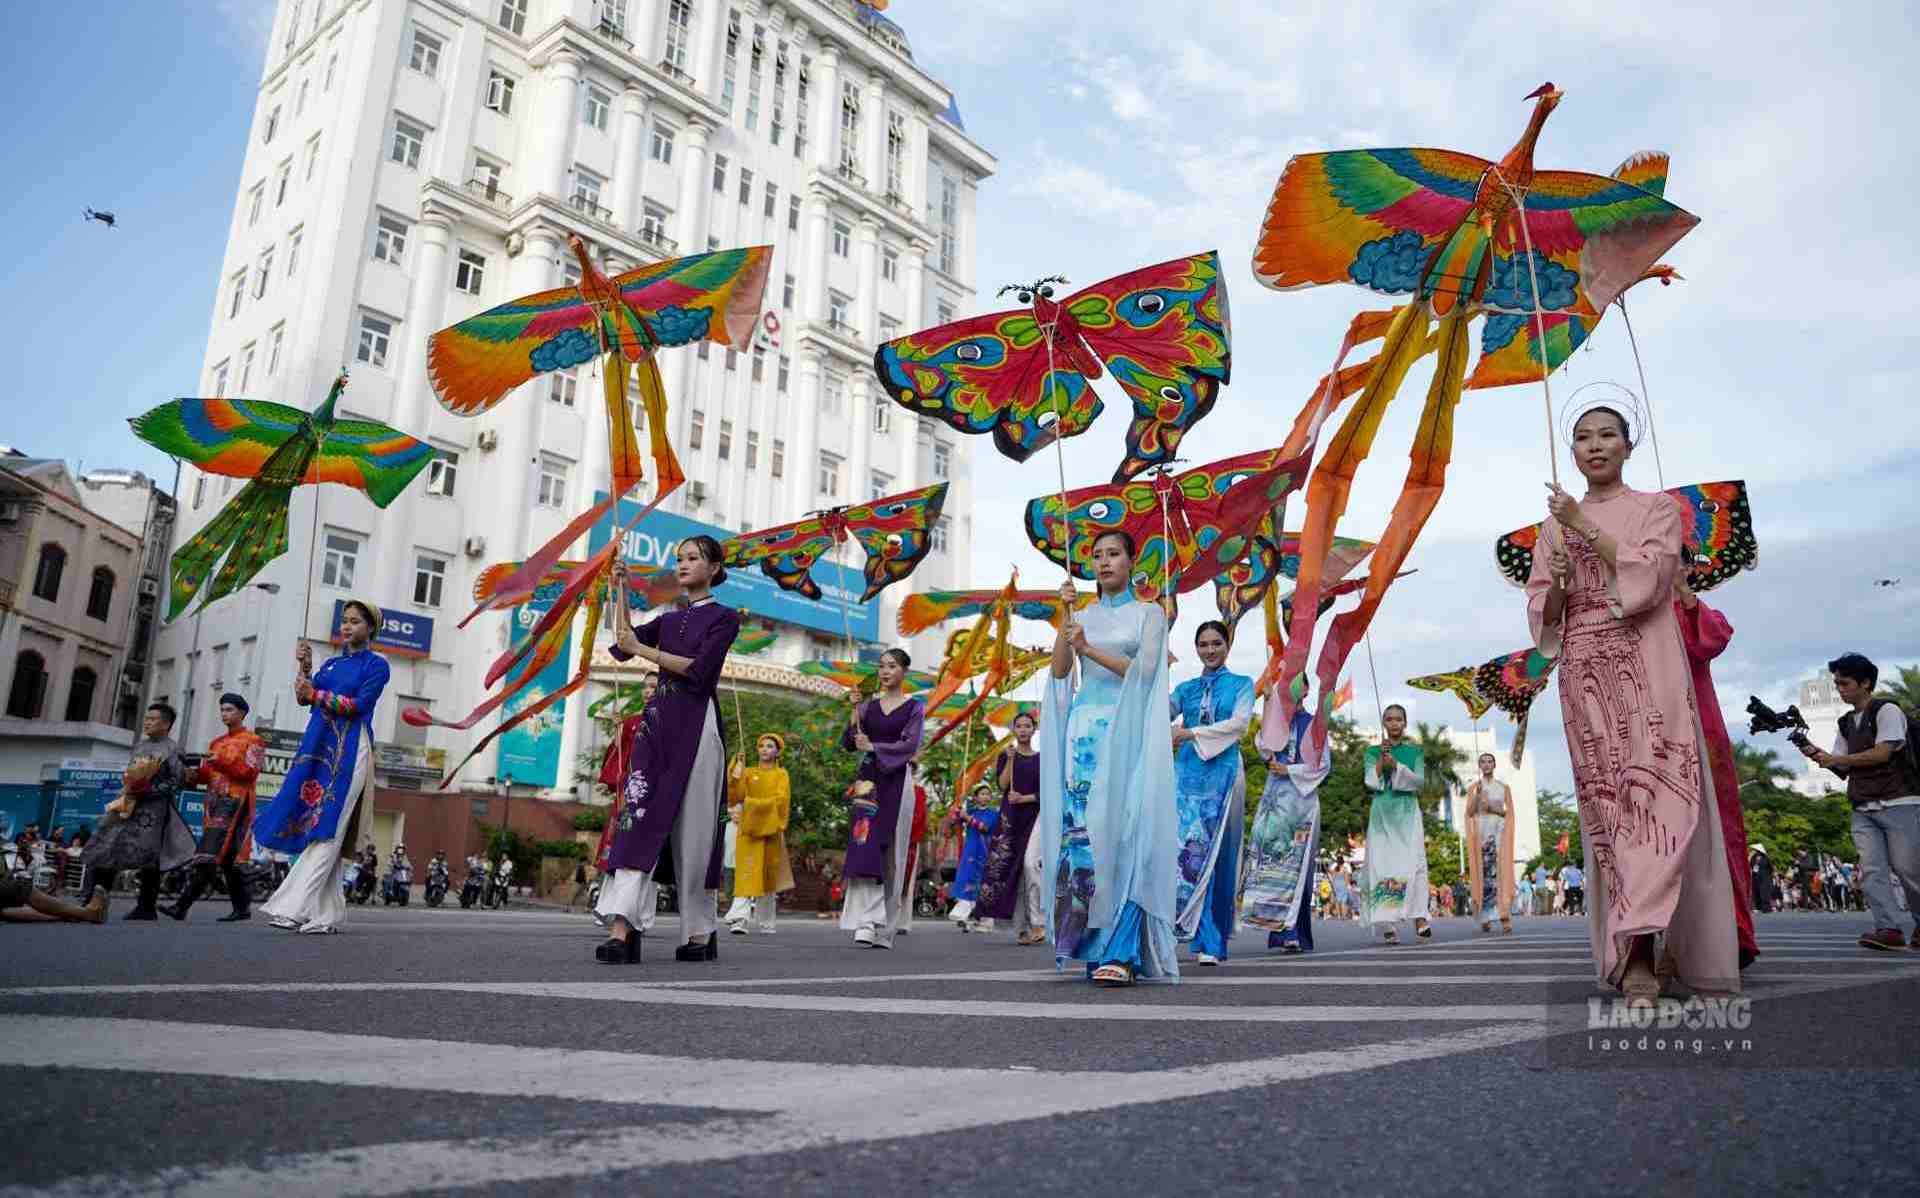 Năm nay, chương trình Lễ hội đường phố có sự tham gia của hơn 500 nghệ sĩ trong và ngoài nước.